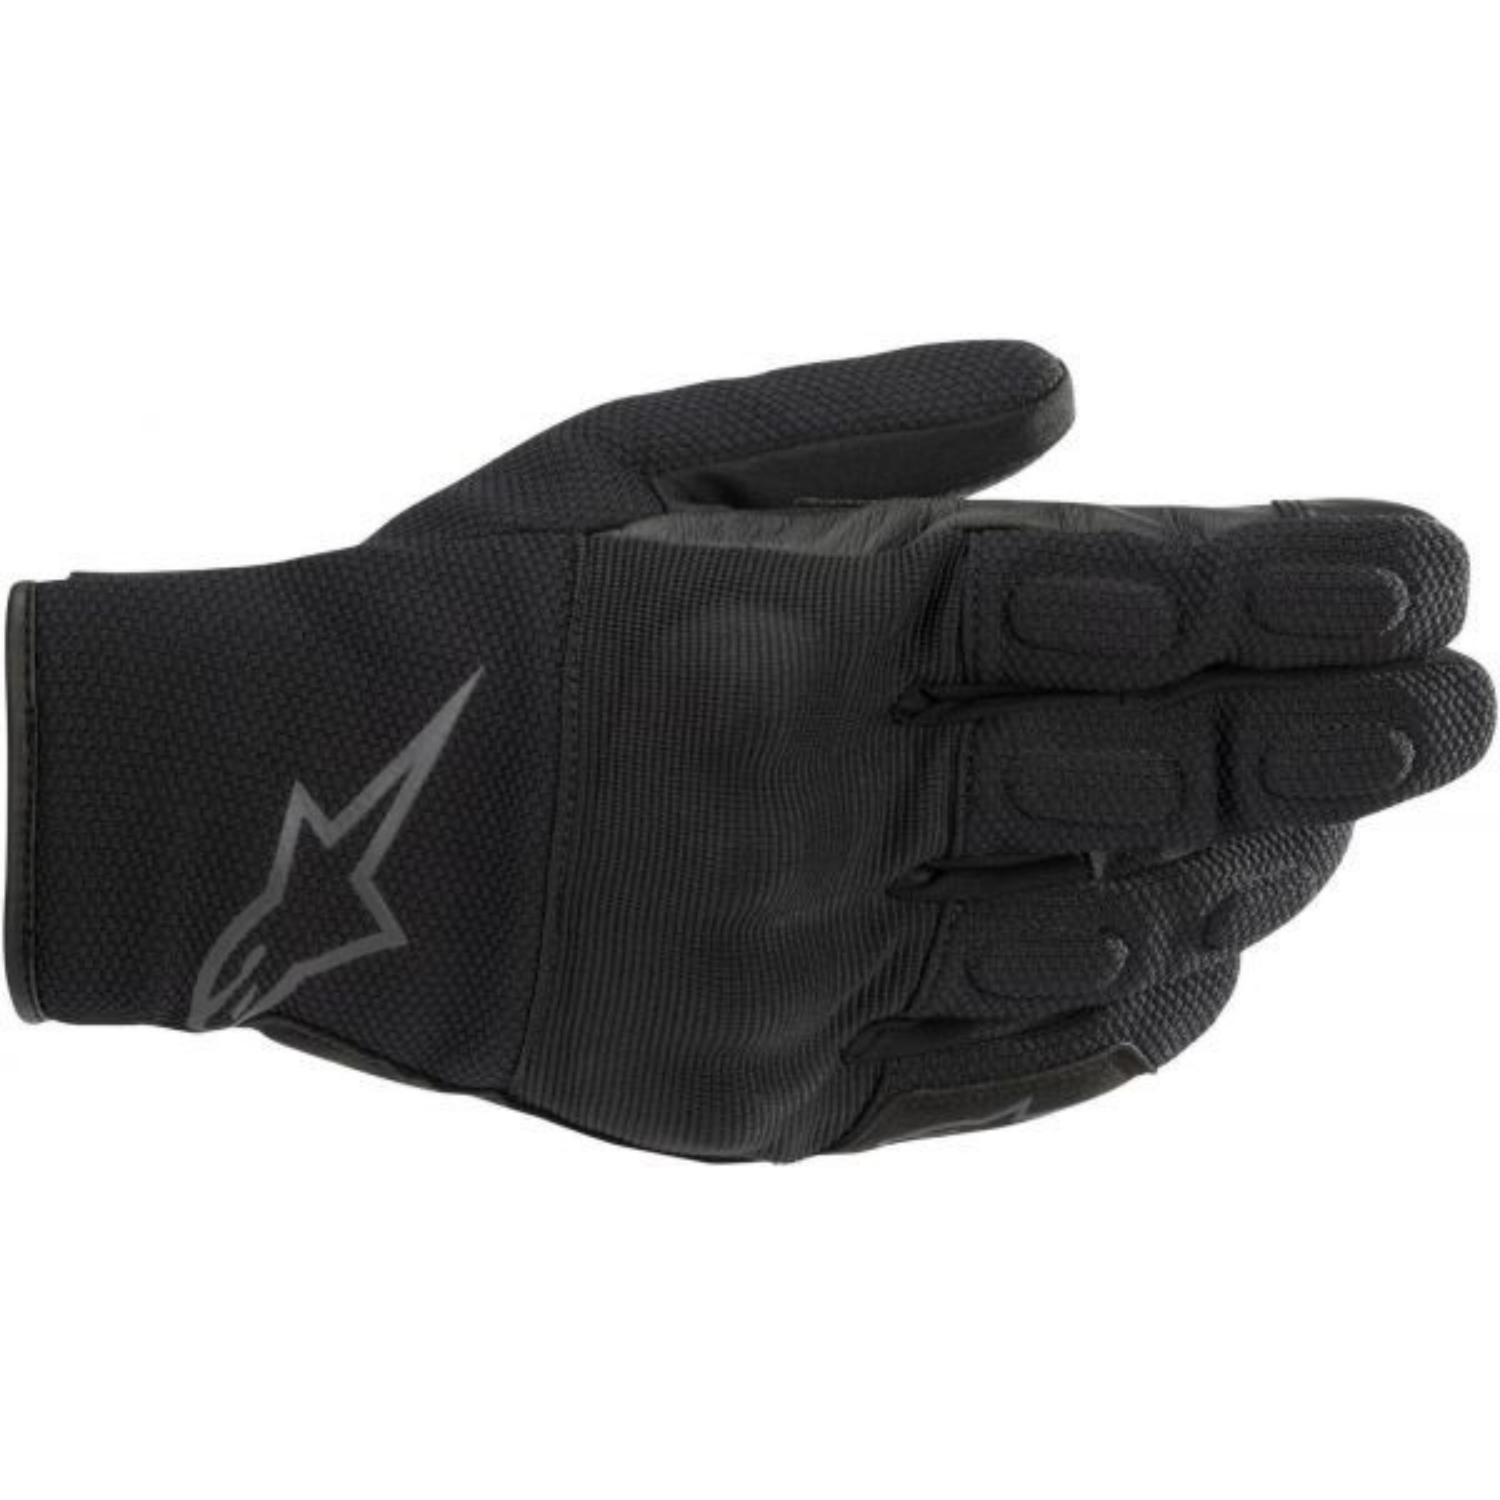 Image of Alpinestars S Max Drystar Gloves Black Anthracite Größe S